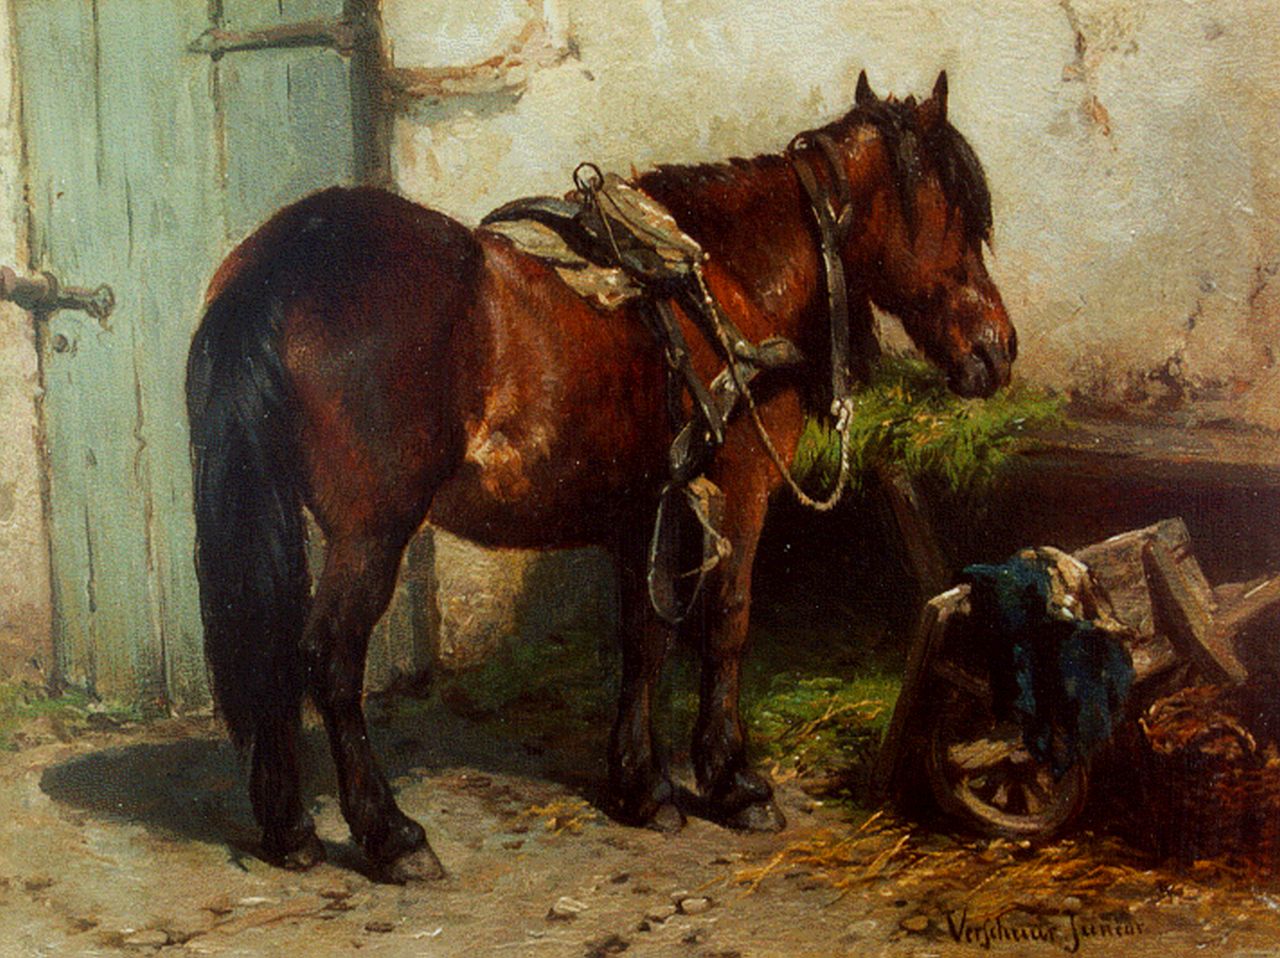 Verschuur jr. W.  | Wouter Verschuur jr., A horse on a yard, Öl auf Holz 15,2 x 20,3 cm, signed l.r.